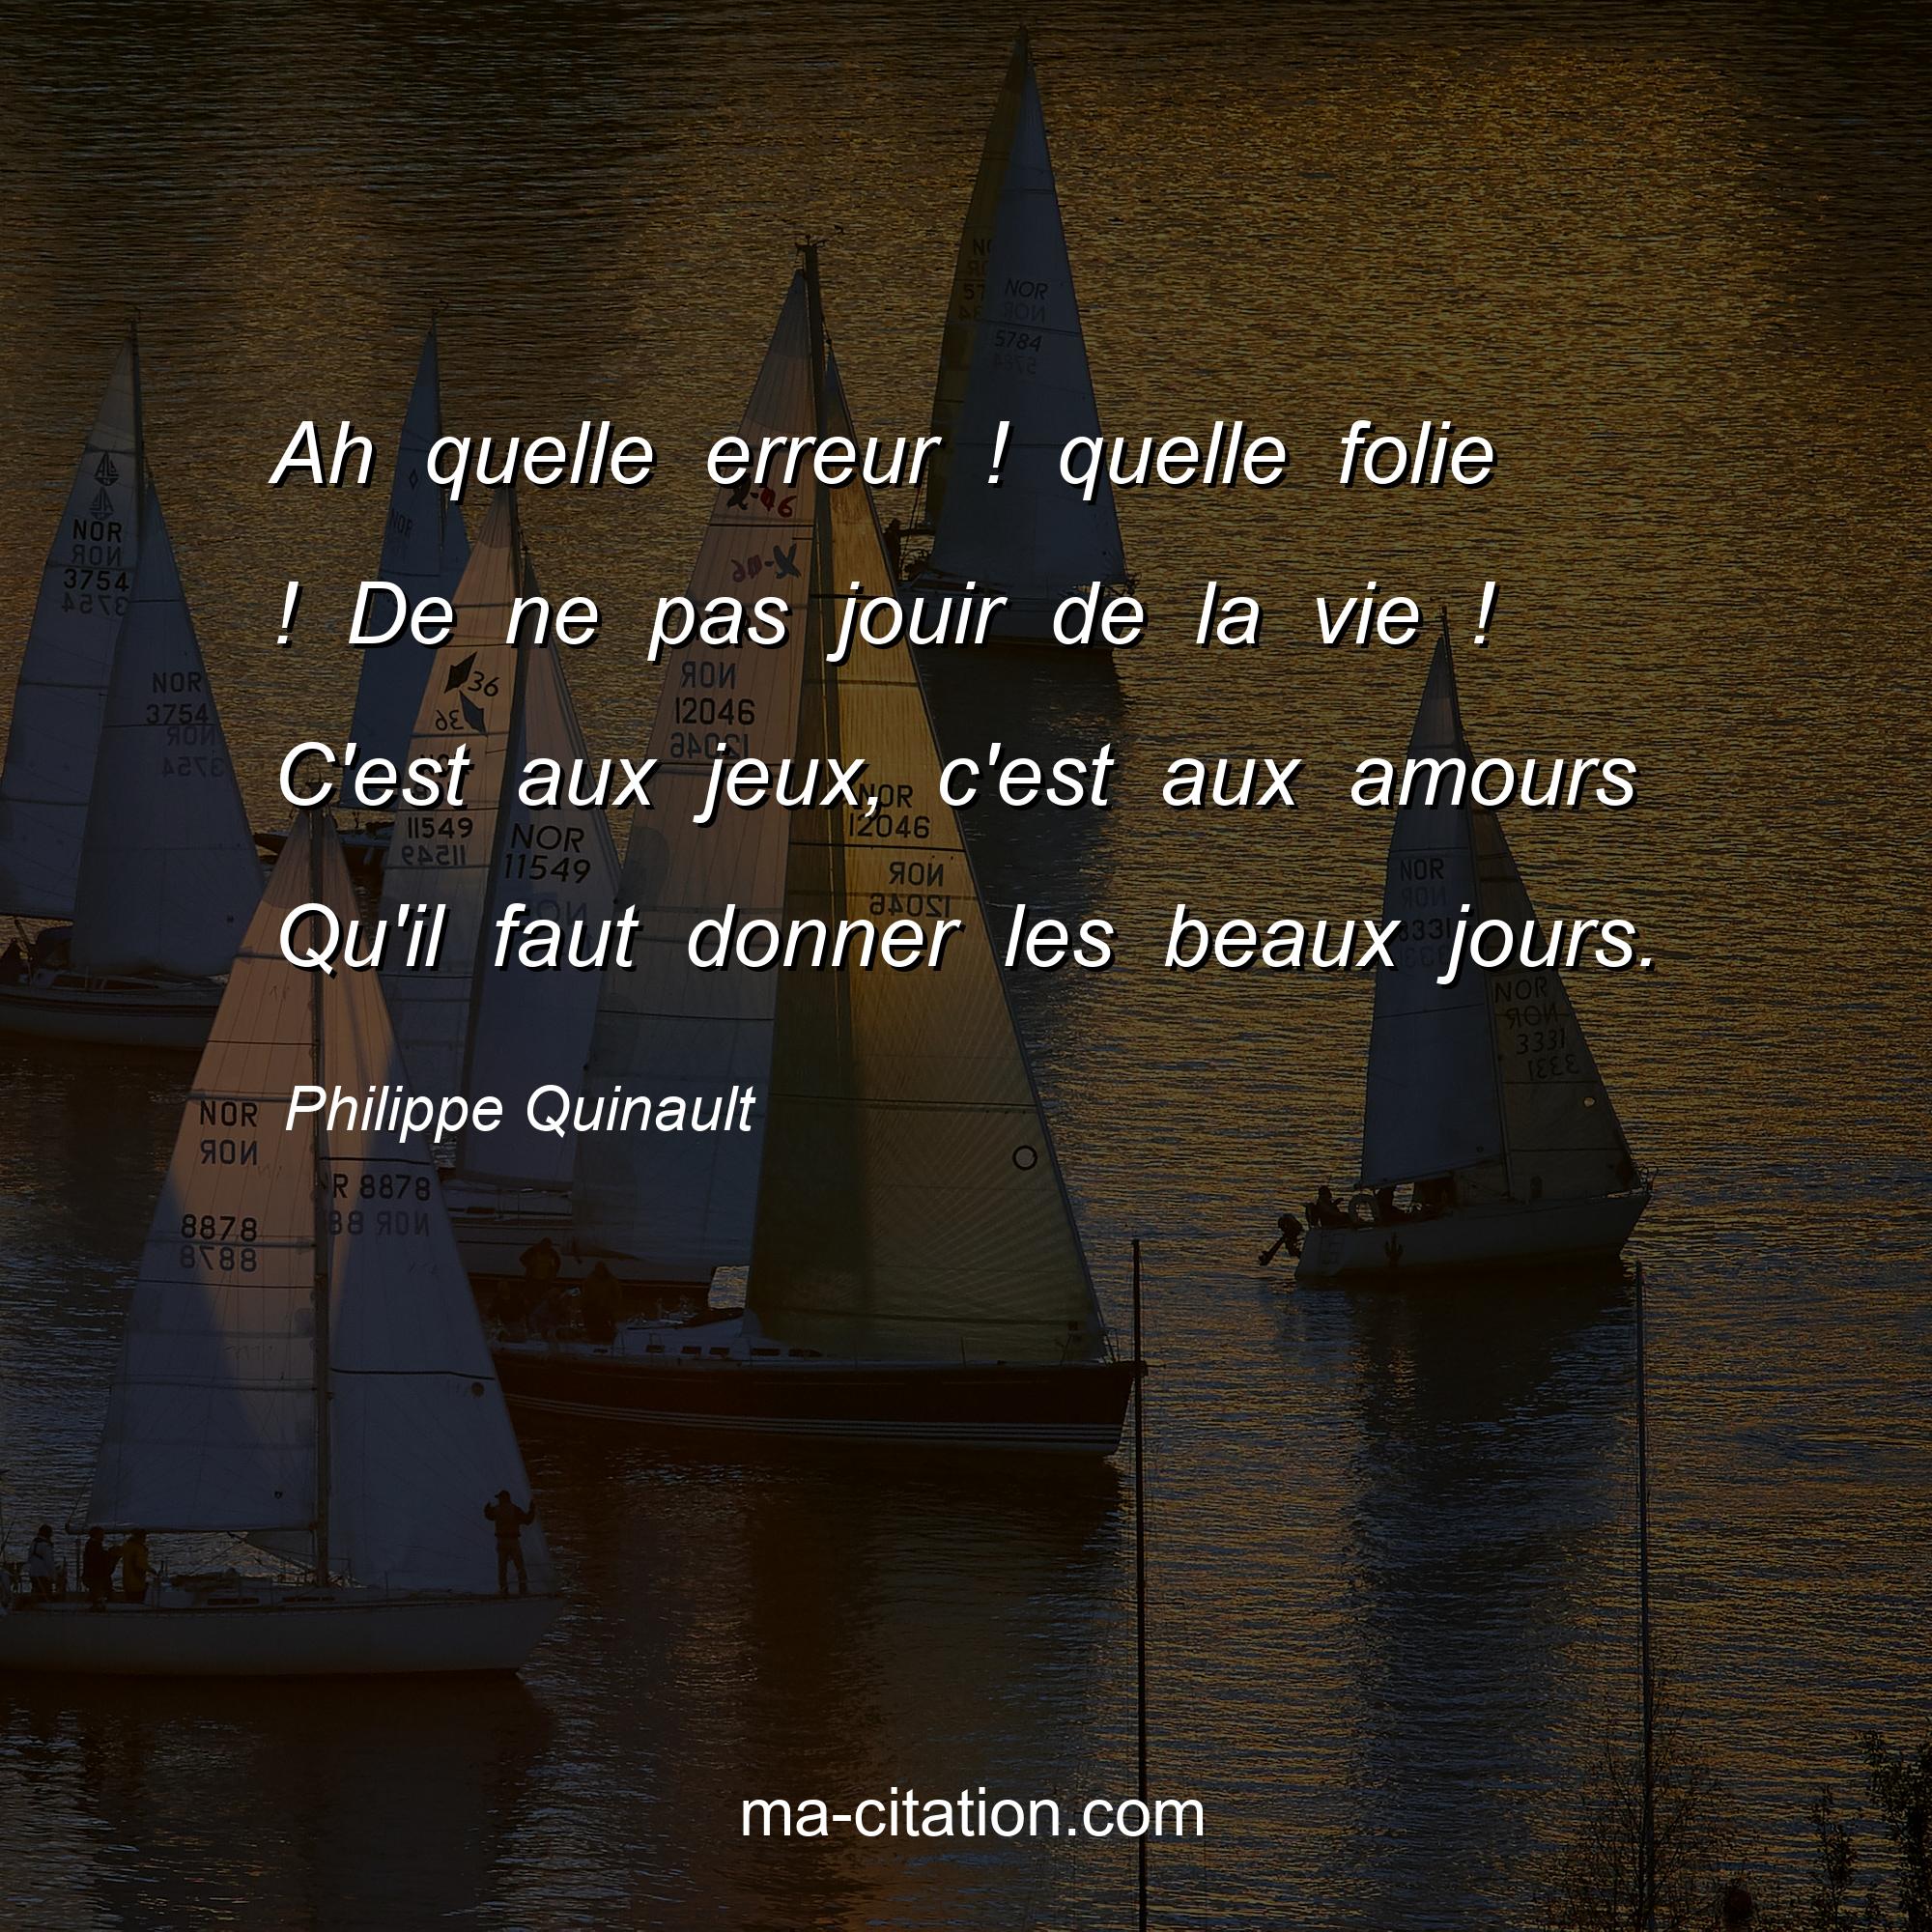 Philippe Quinault : Ah quelle erreur ! quelle folie ! De ne pas jouir de la vie ! C'est aux jeux, c'est aux amours Qu'il faut donner les beaux jours.